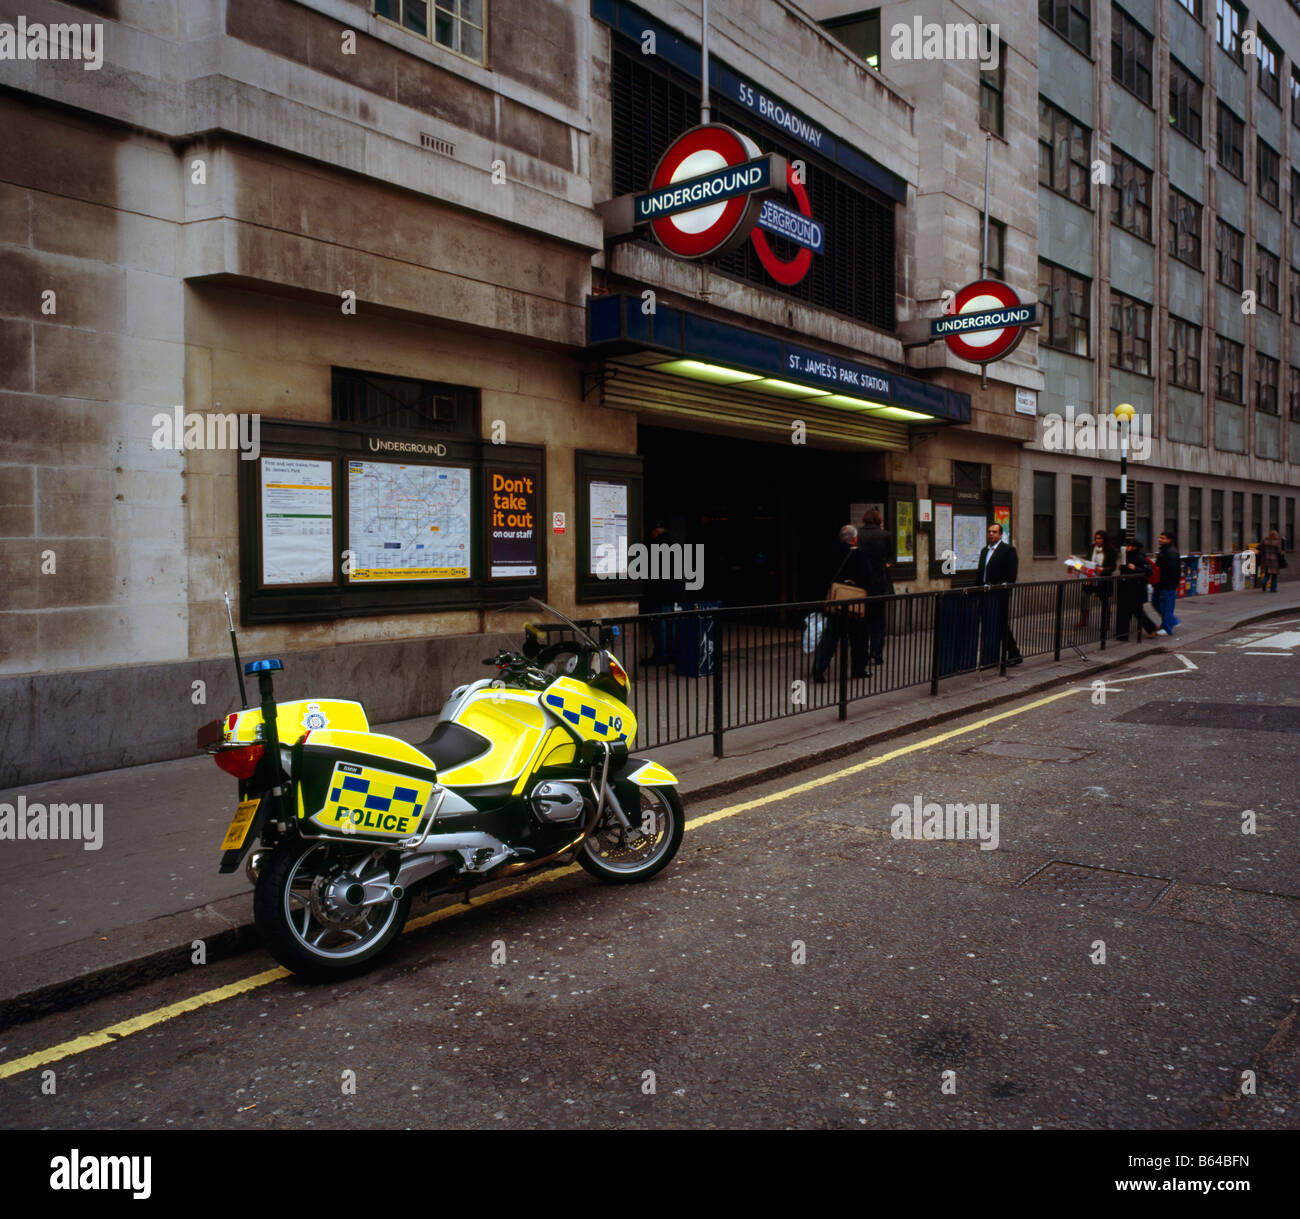 British Transport Police Motorcycle outside St James Park Underground Station. London, England, UK. Stock Photo